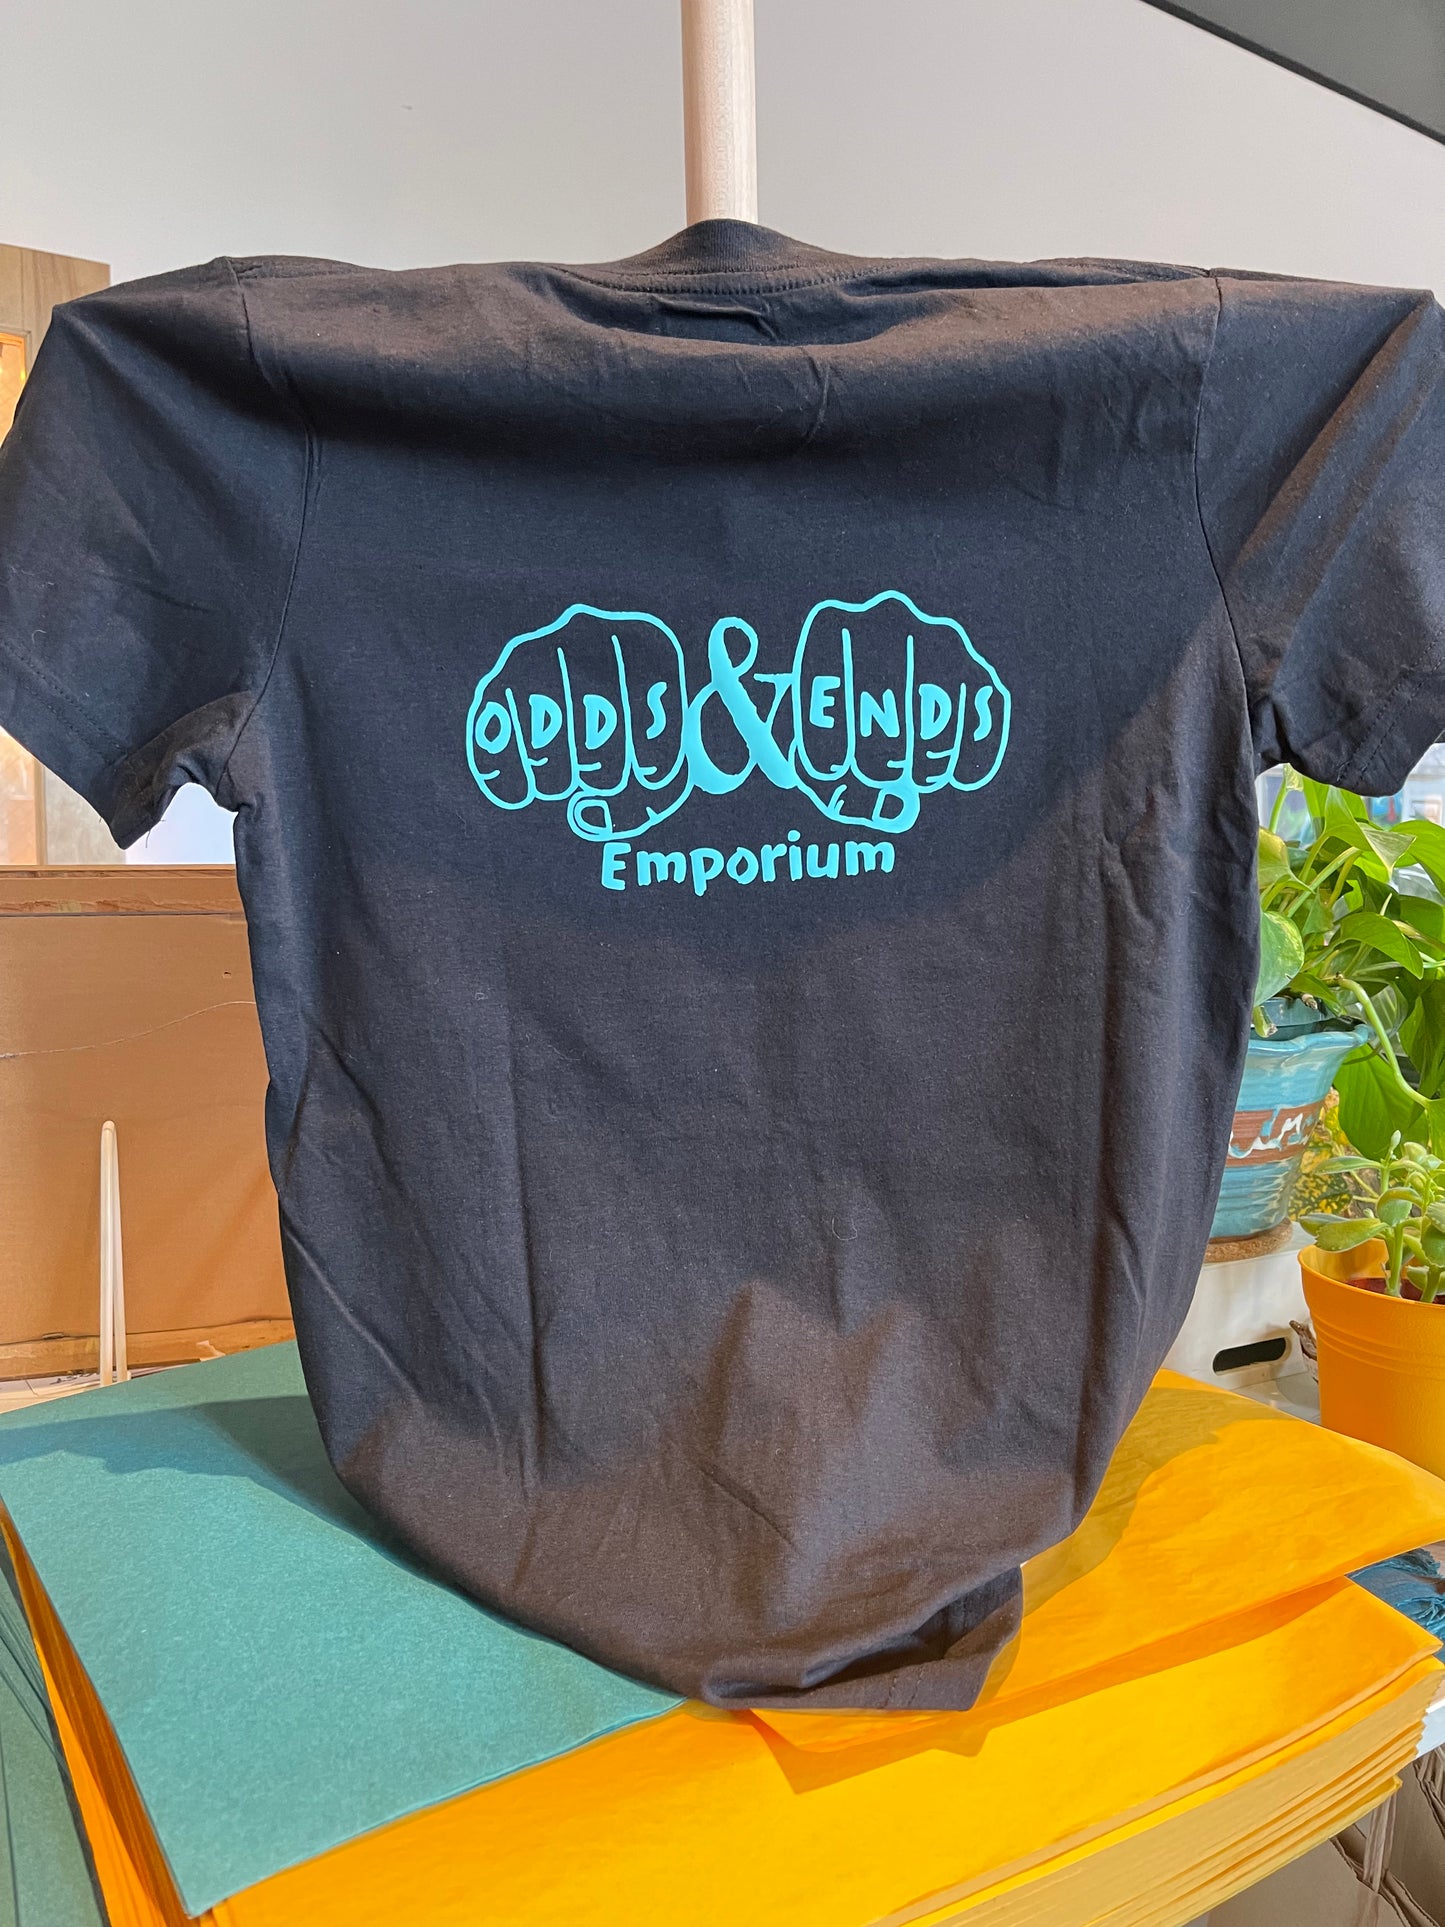 Odds & Ends Emporium T-shirts